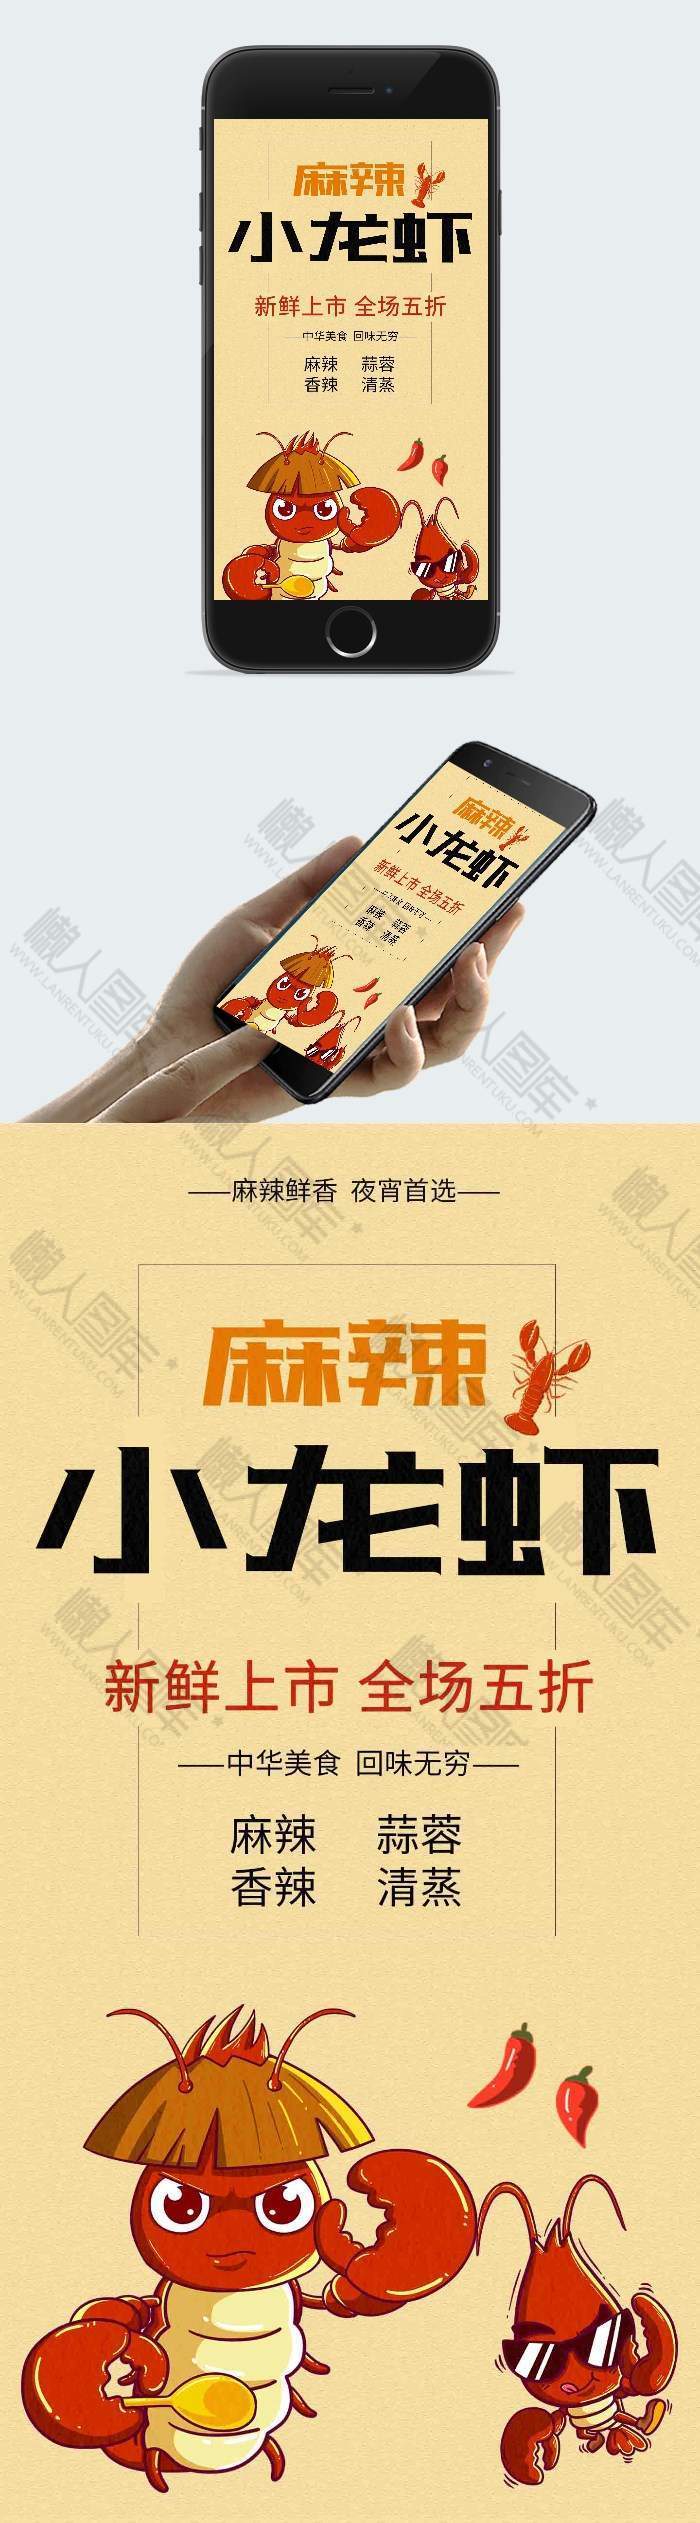 麻辣小龙虾五折促销手机海报